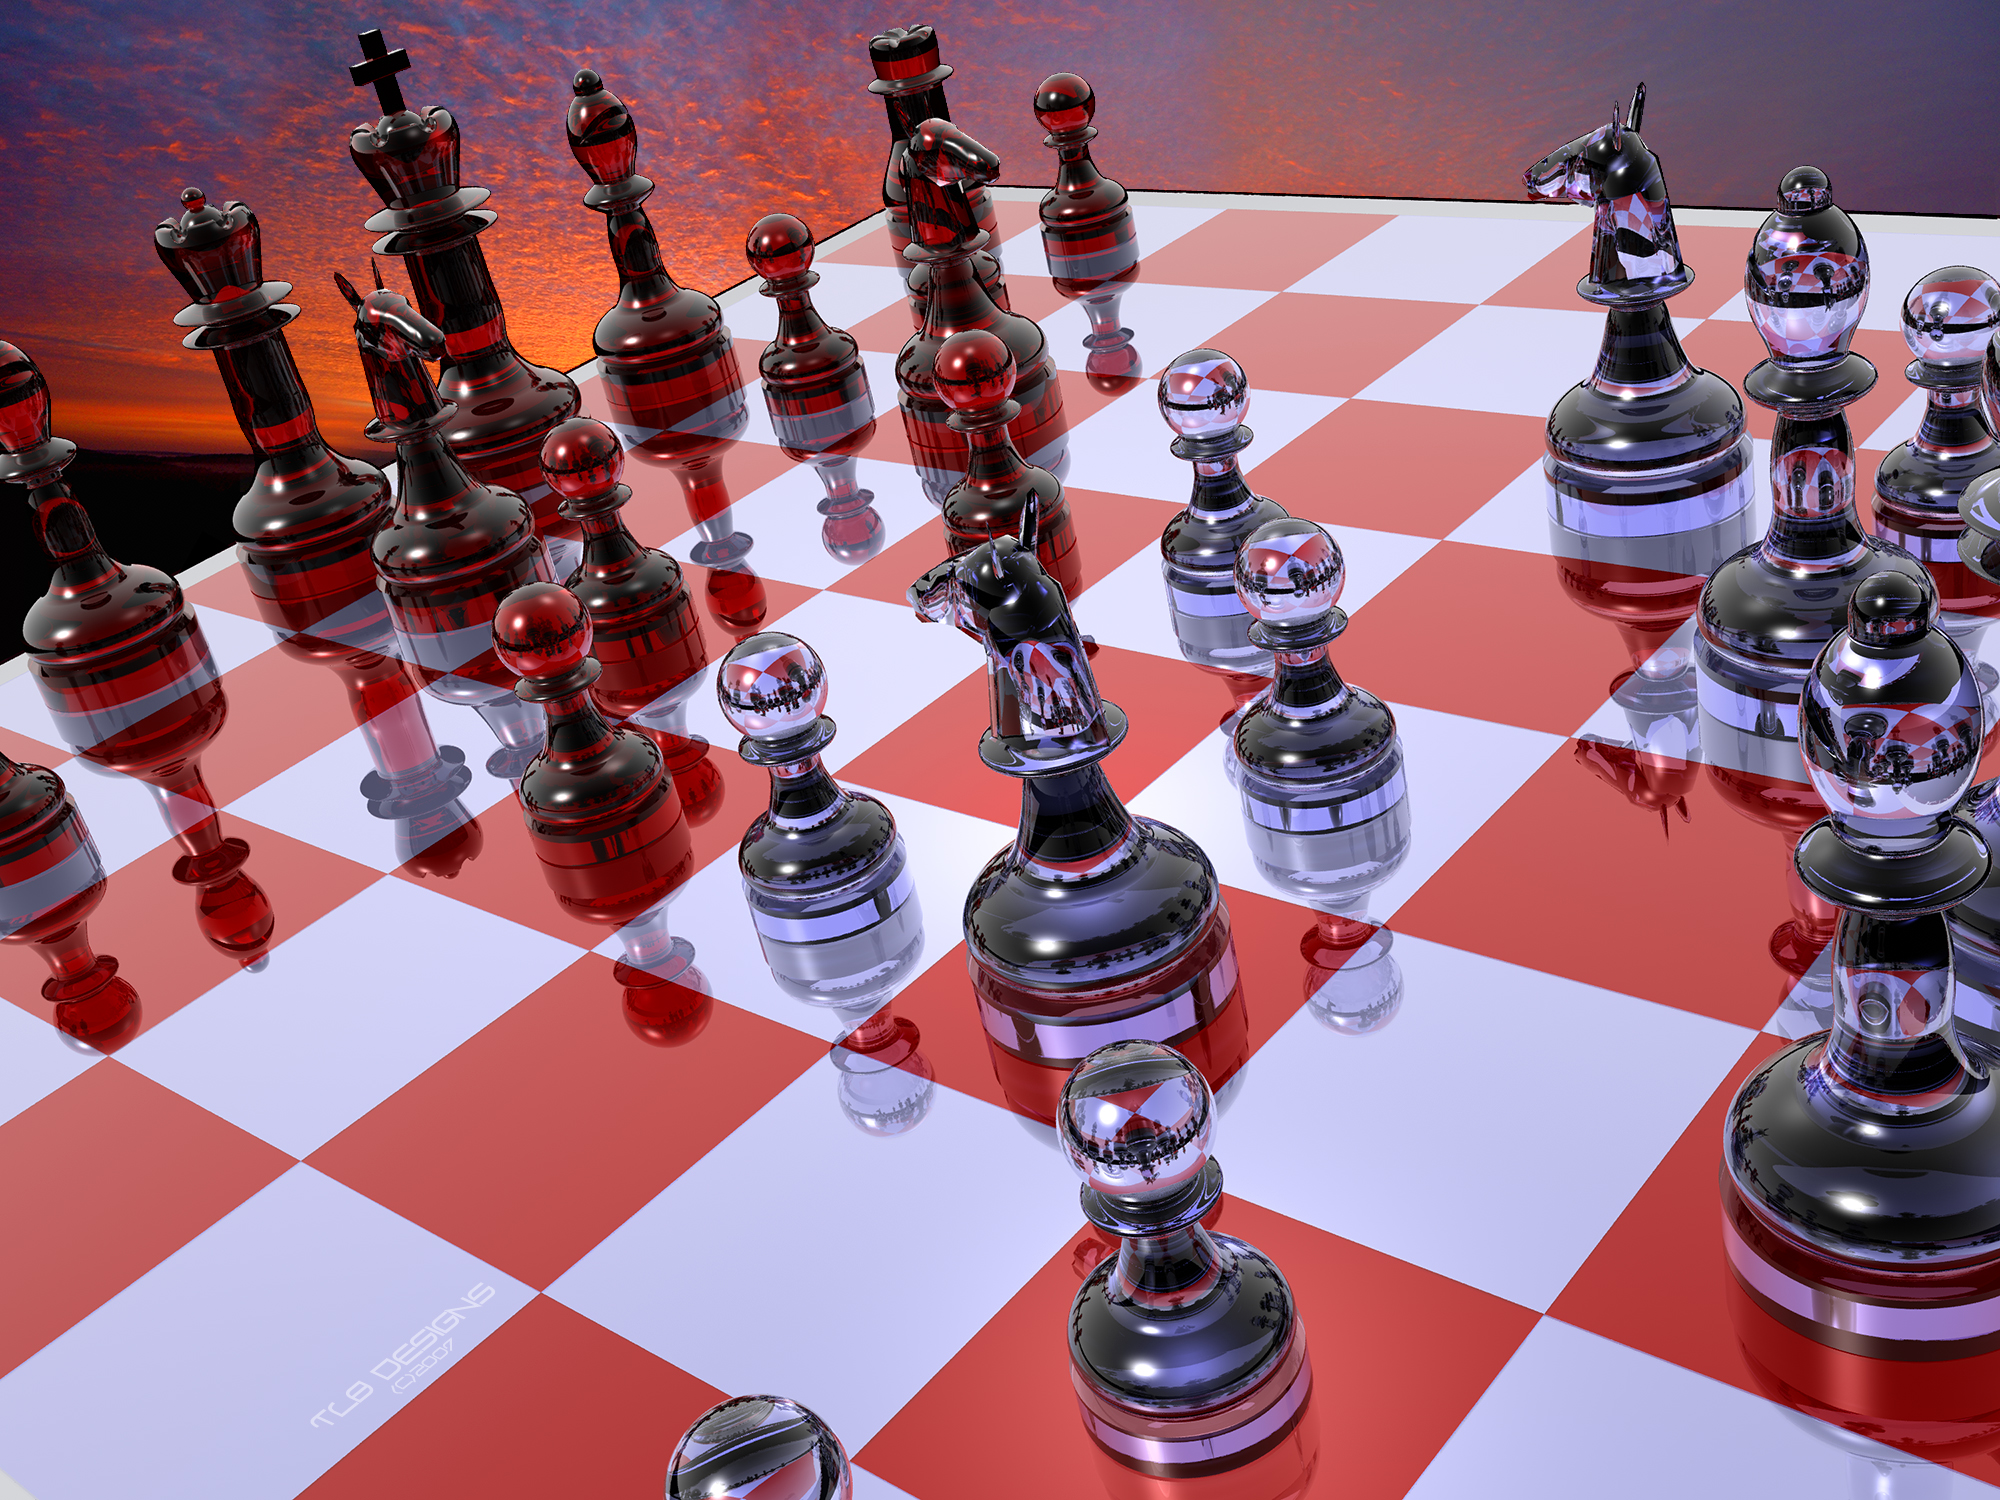 New Chess Wallpaper 3 by TLBKlaus on DeviantArt